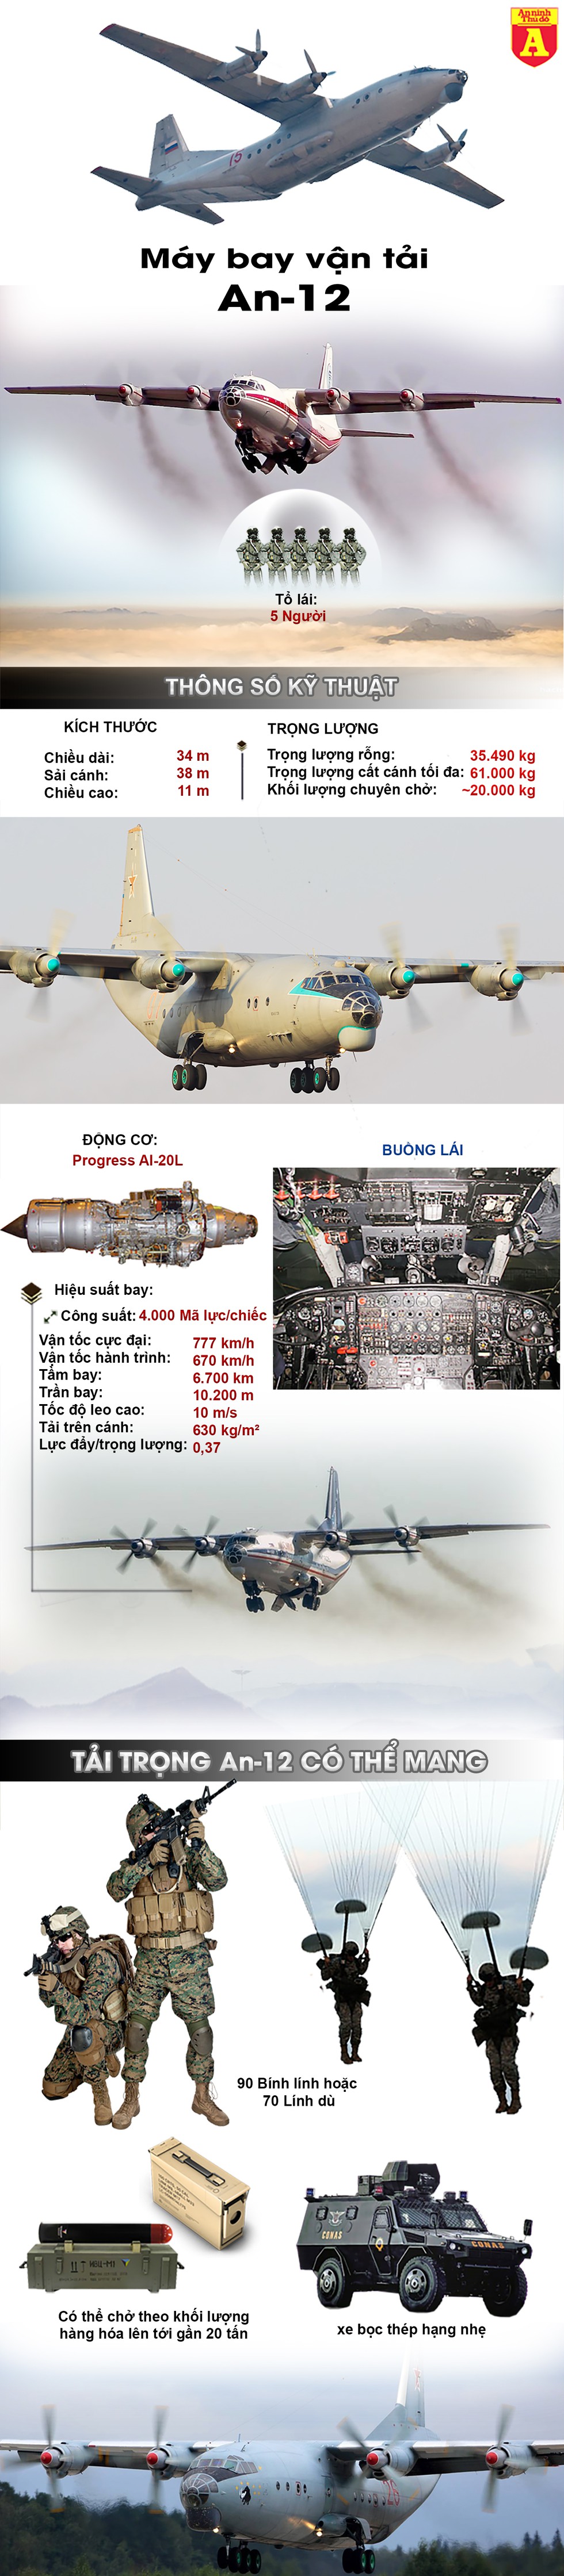 [Infographics] Máy bay An-12 Ukraine hết nhiên liệu buộc phải đáp khẩn cấp làm 5 người chết - Ảnh 1